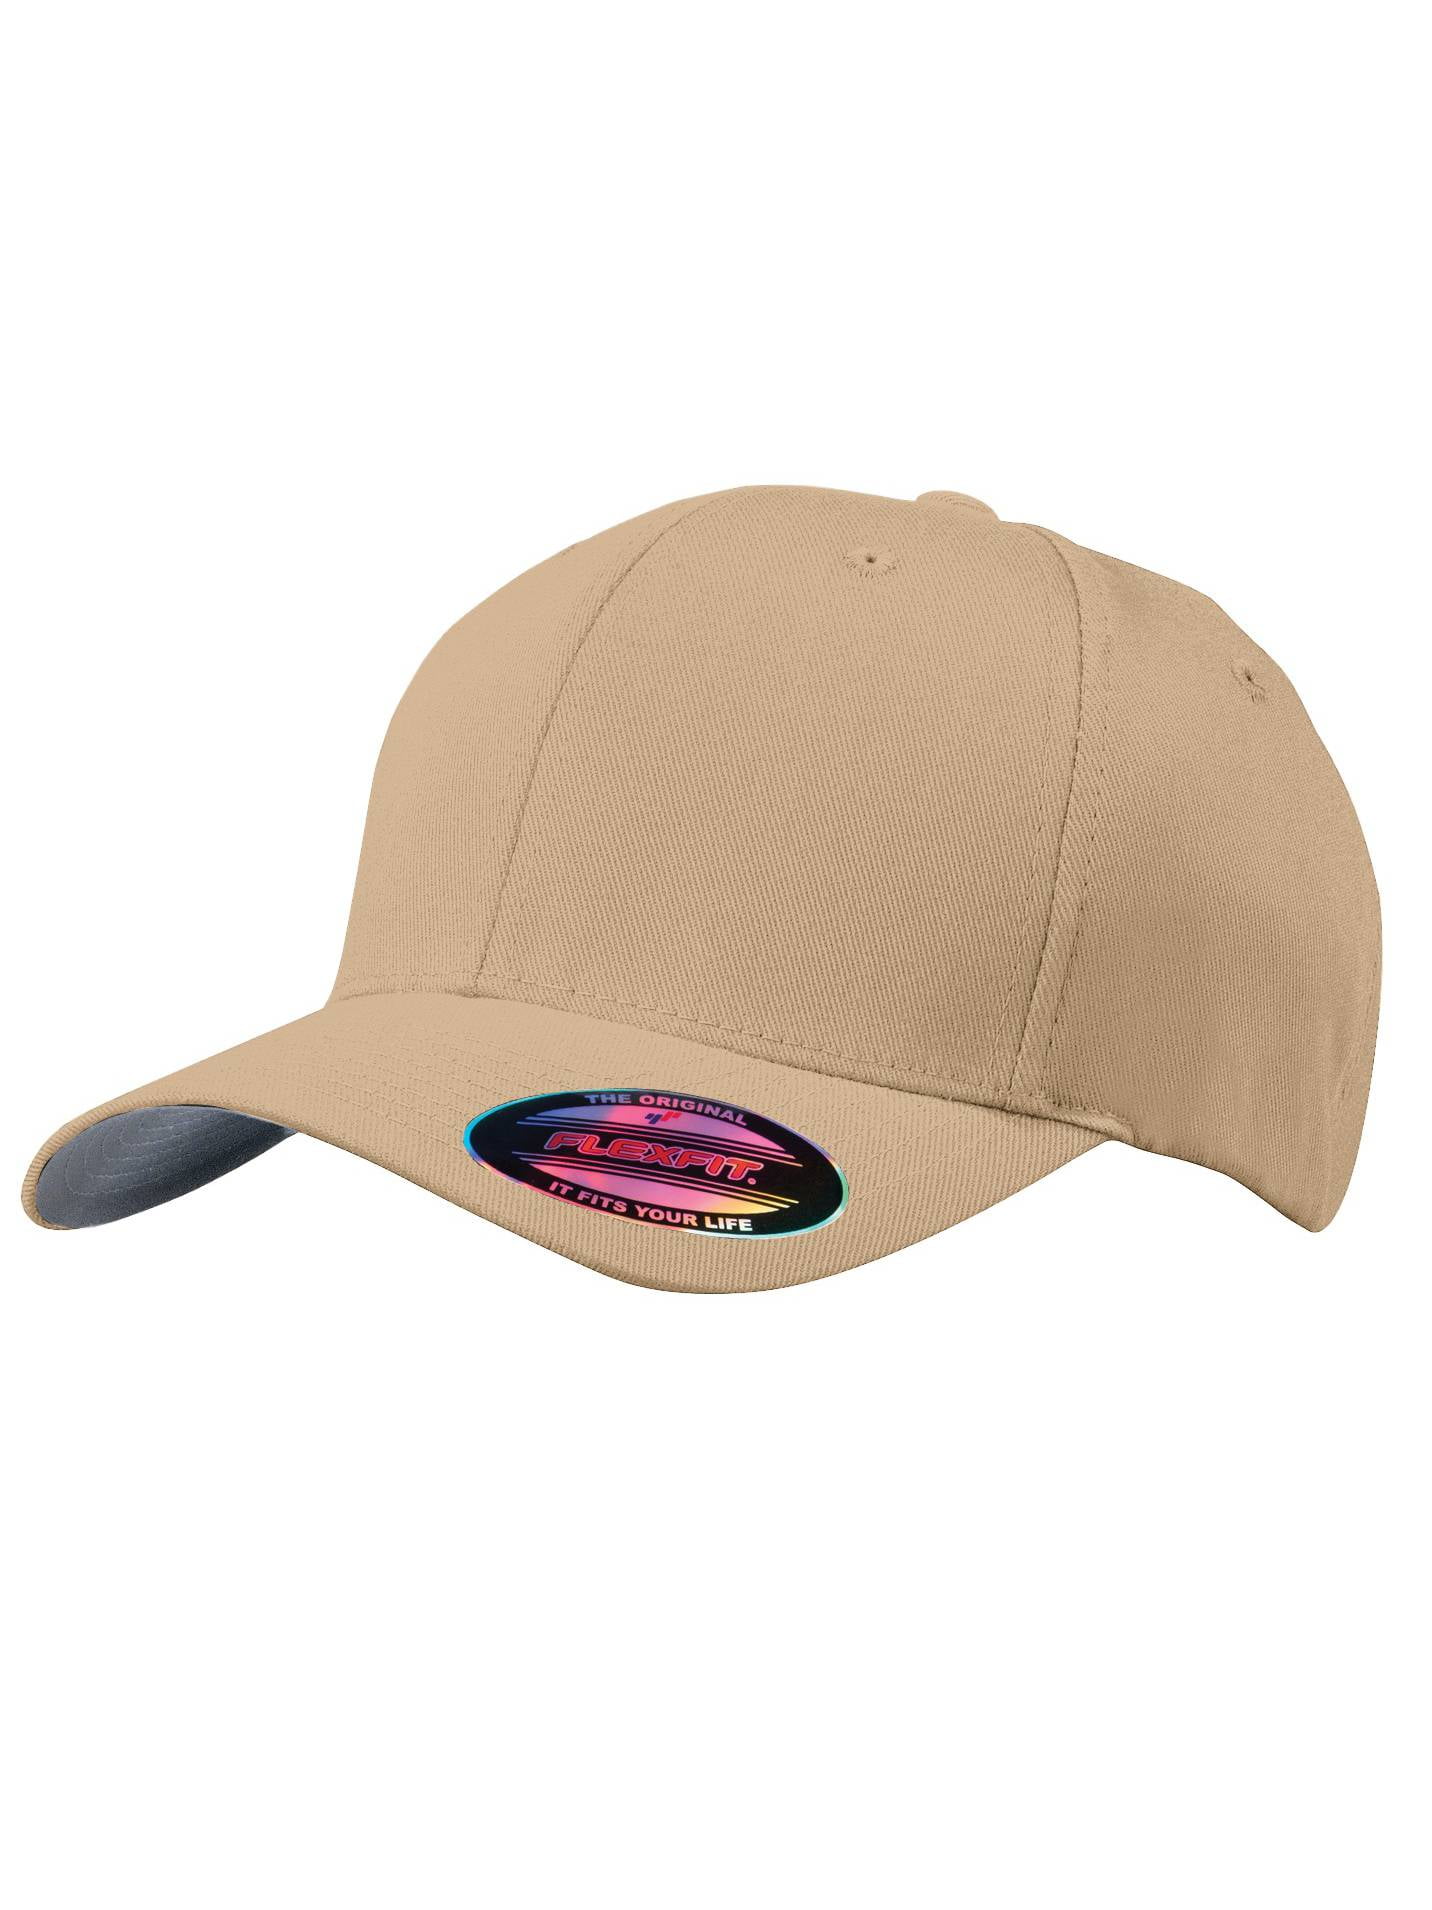 Top Headwear Flex Fit Baseball Cap - Olive Drab/Green - Small/Medium